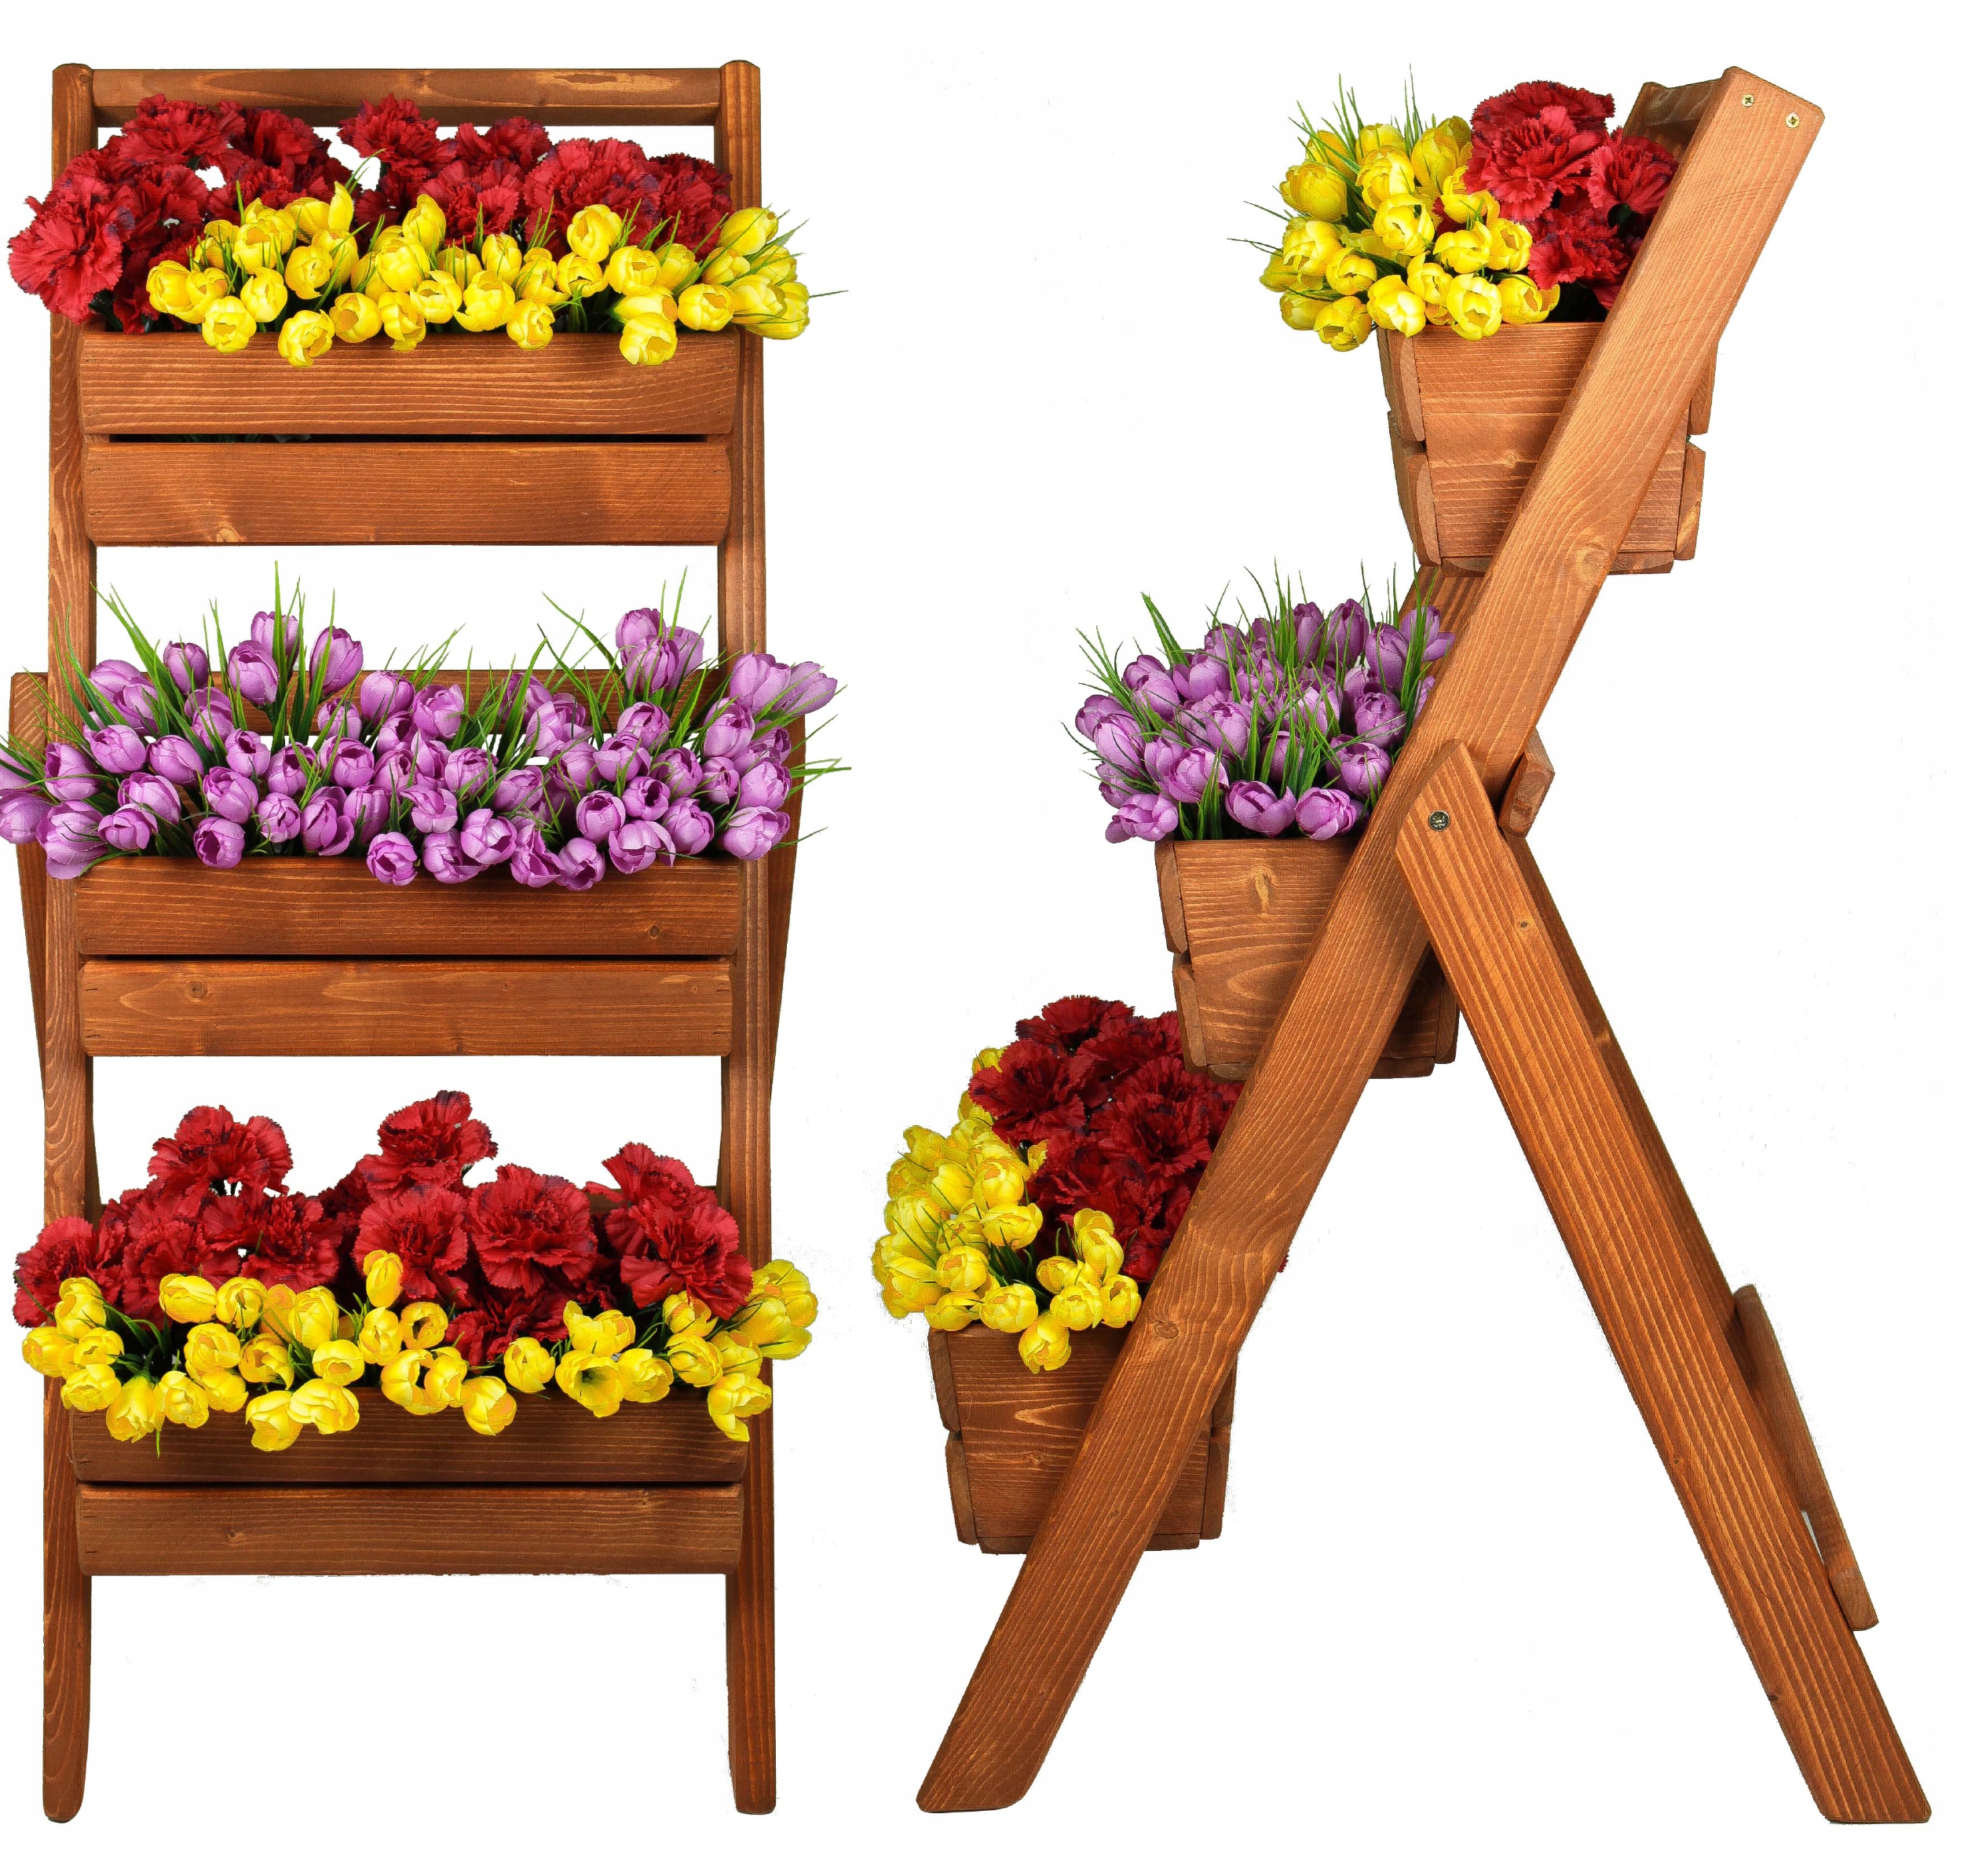 Kvetináč - Stojan pre kvety drevený kvetinový rebrík tuku